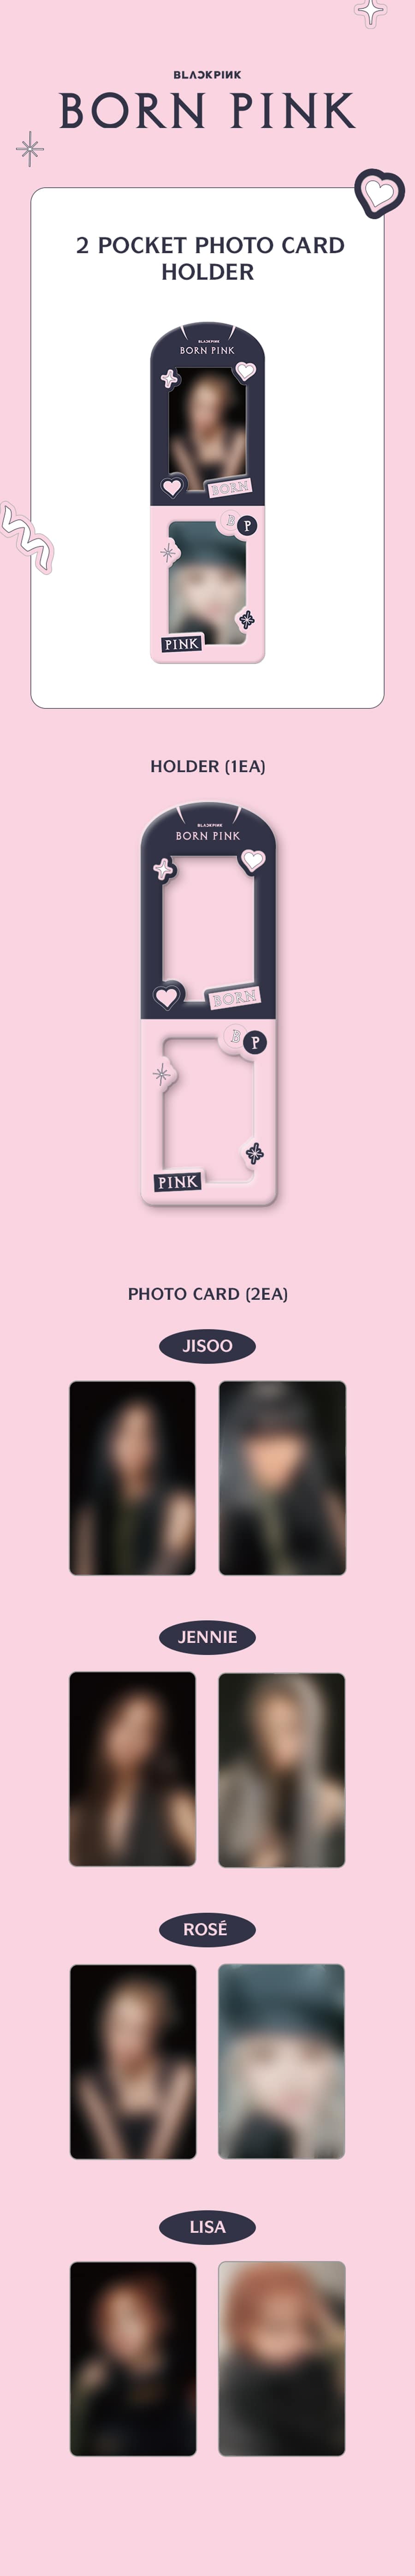 blackpink-born-pink-2-pocket-photo-card-holder-wholesale